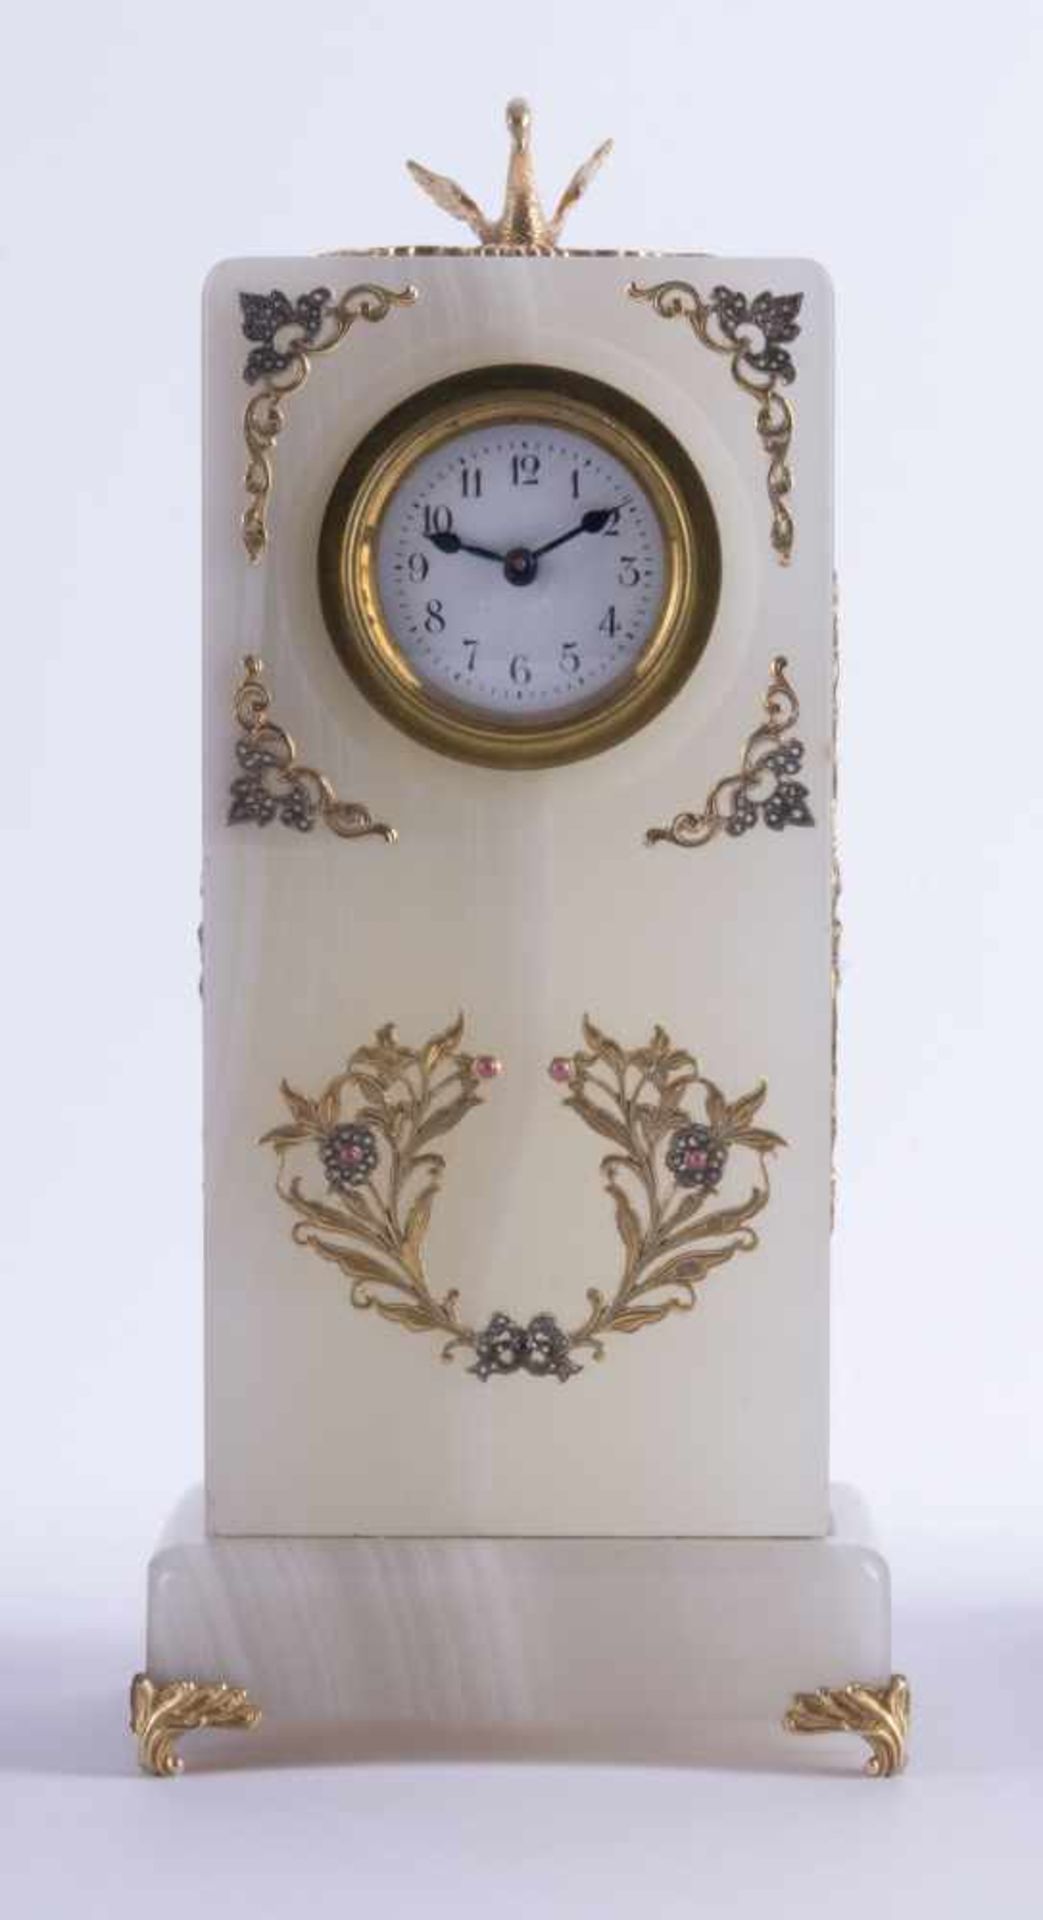 Uhr Russland um 1900Onyx-Gehäuse, mit vergoldeten Silber-Applikationen, besetzt mit Diamantrosen und